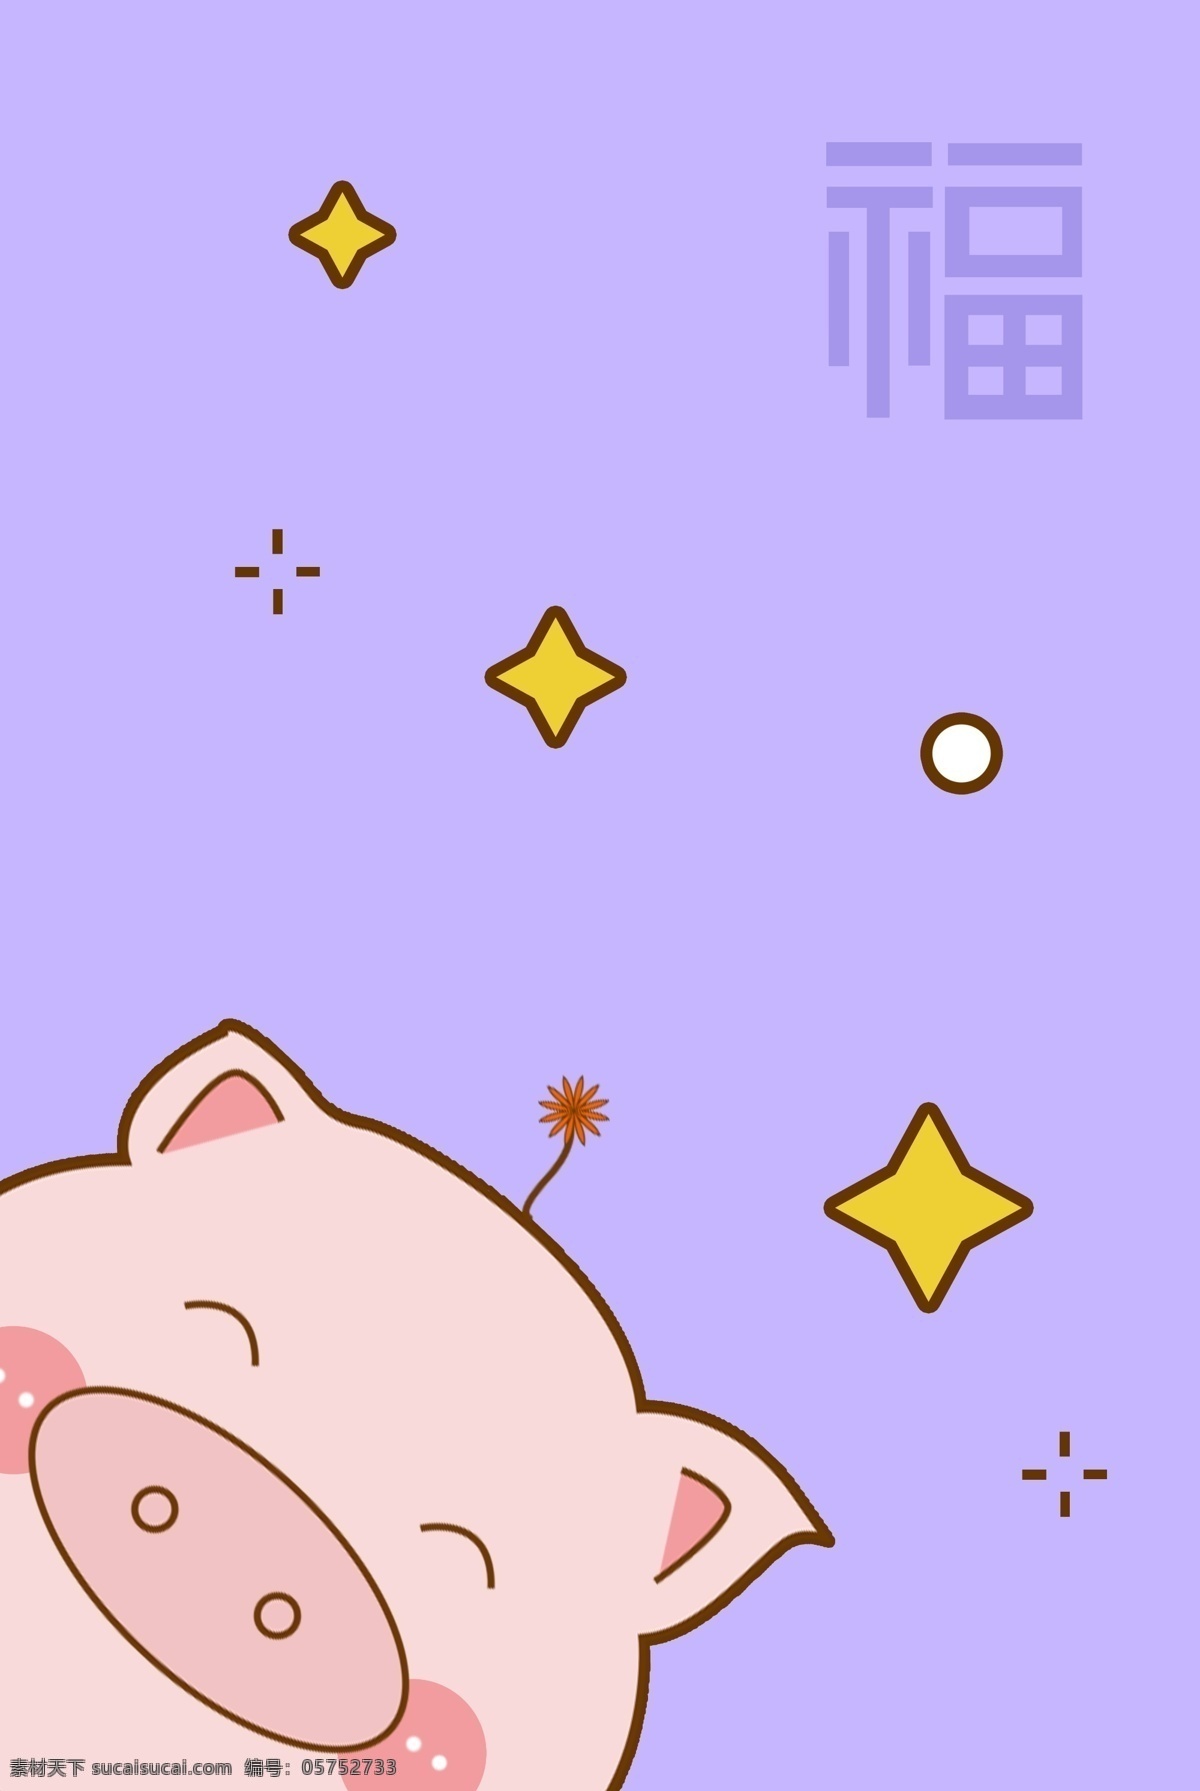 紫色 简约 萌 系 小 猪 新年 壁纸 风 海报 背景 萌系 小猪 可爱 卡通 猪年 2019 星星 闪光 福字 福